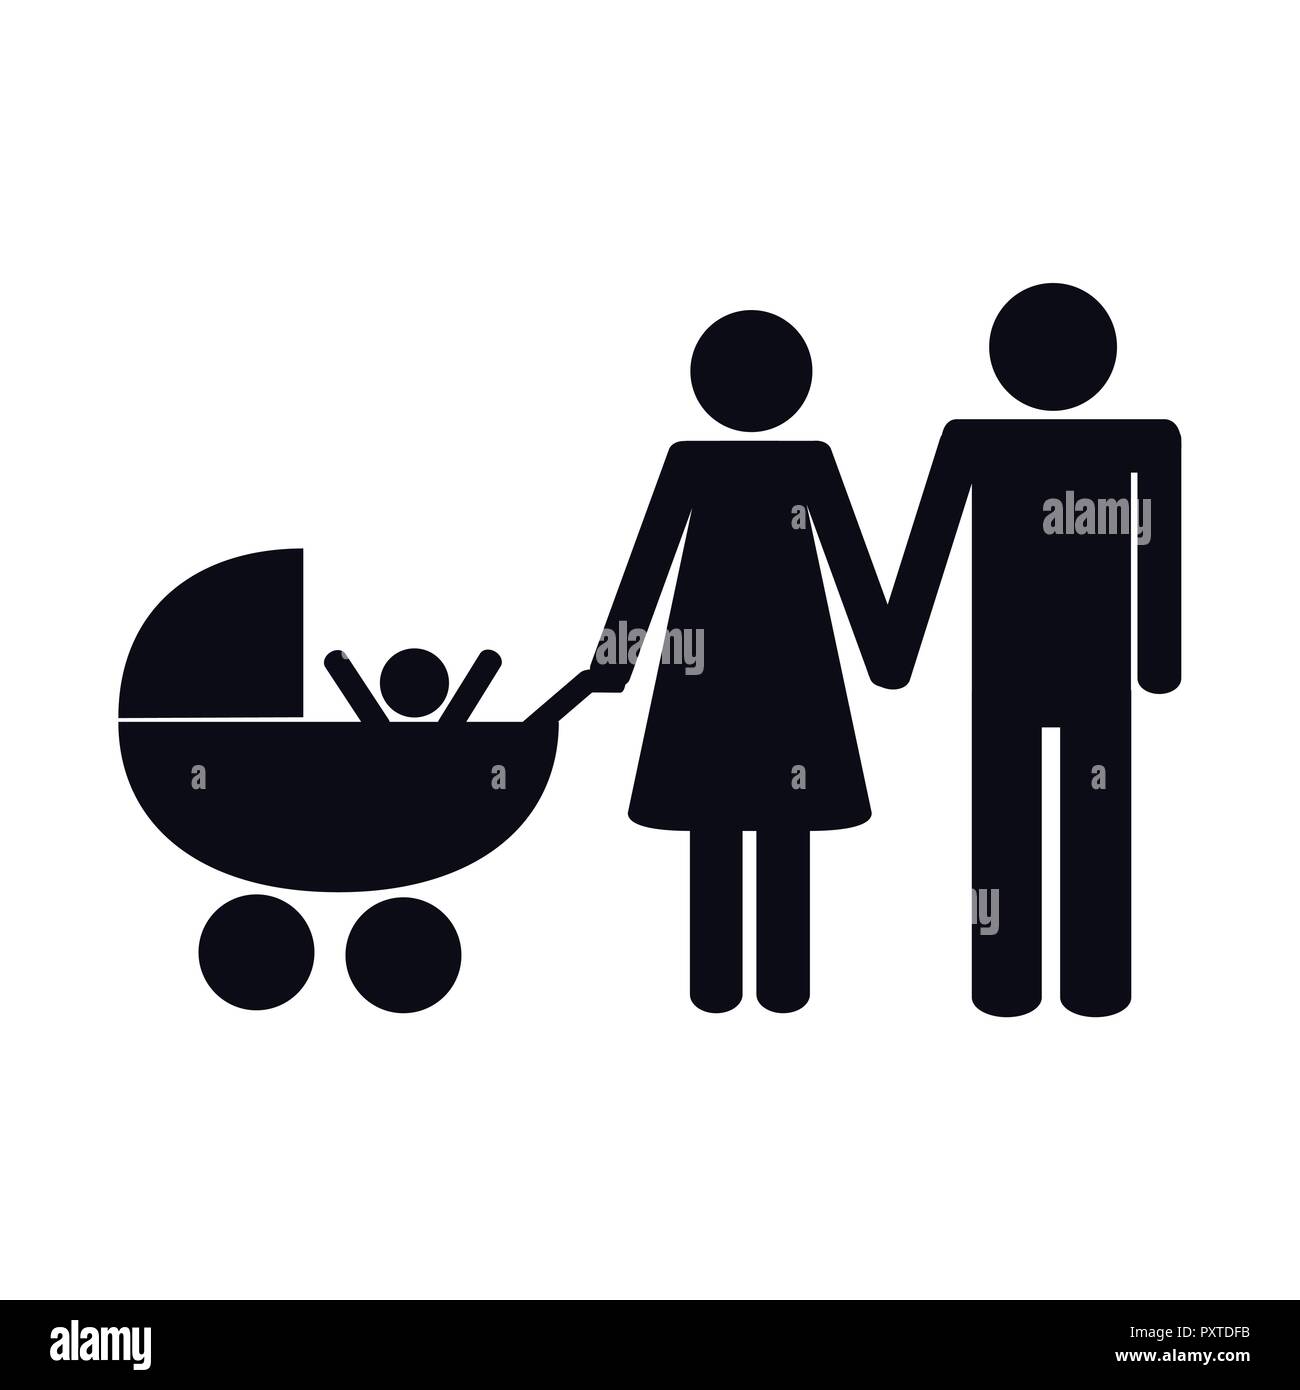 Eltern mit einem Baby Piktogramm Vektor-illustration EPS 10. Stock Vektor